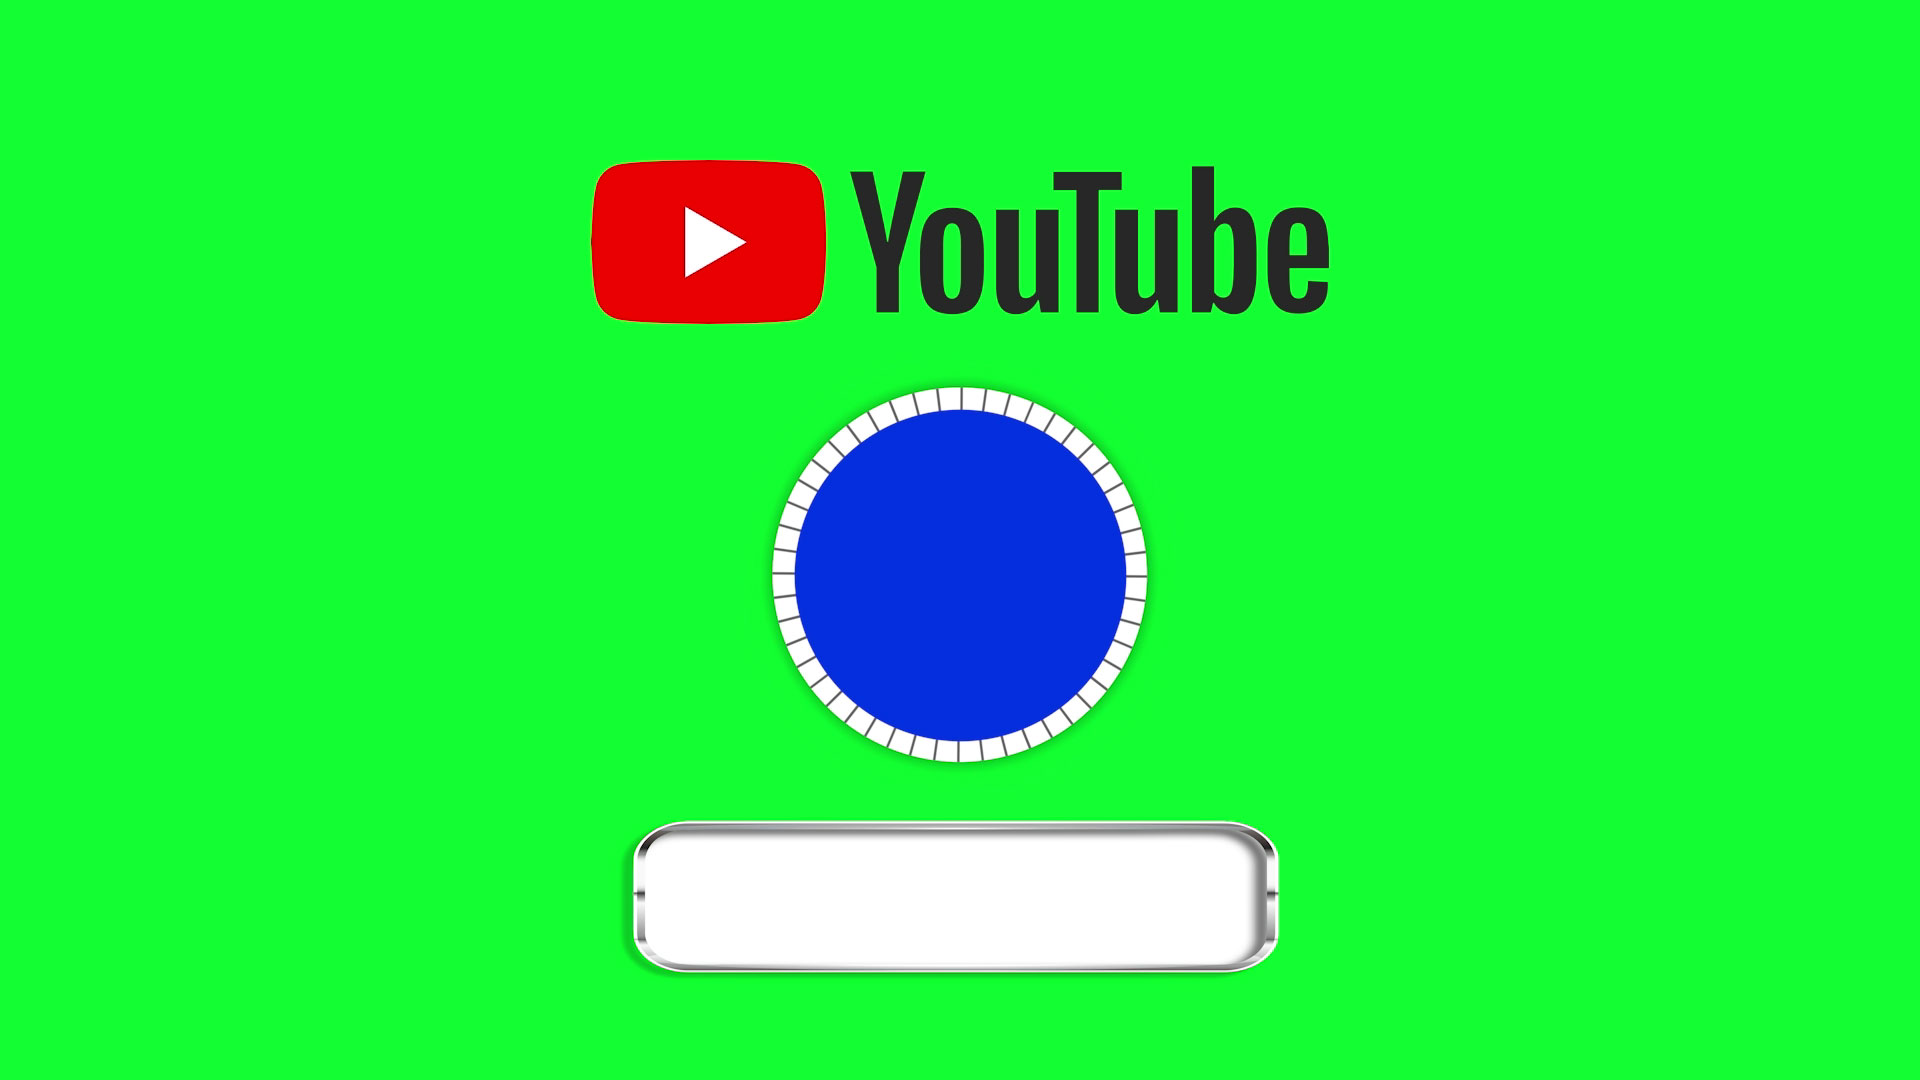 Xem bản giới thiệu kênh YouTube của bạn trở nên chuyên nghiệp hơn với video hiệu ứng nền màn hình xanh độc đáo. Điều này sẽ giúp cho kênh của bạn trở nên đặc biệt và thu hút khán giả. Để tìm hiểu thêm về video hiệu ứng màn hình xanh, hãy xem những hình ảnh liên quan.